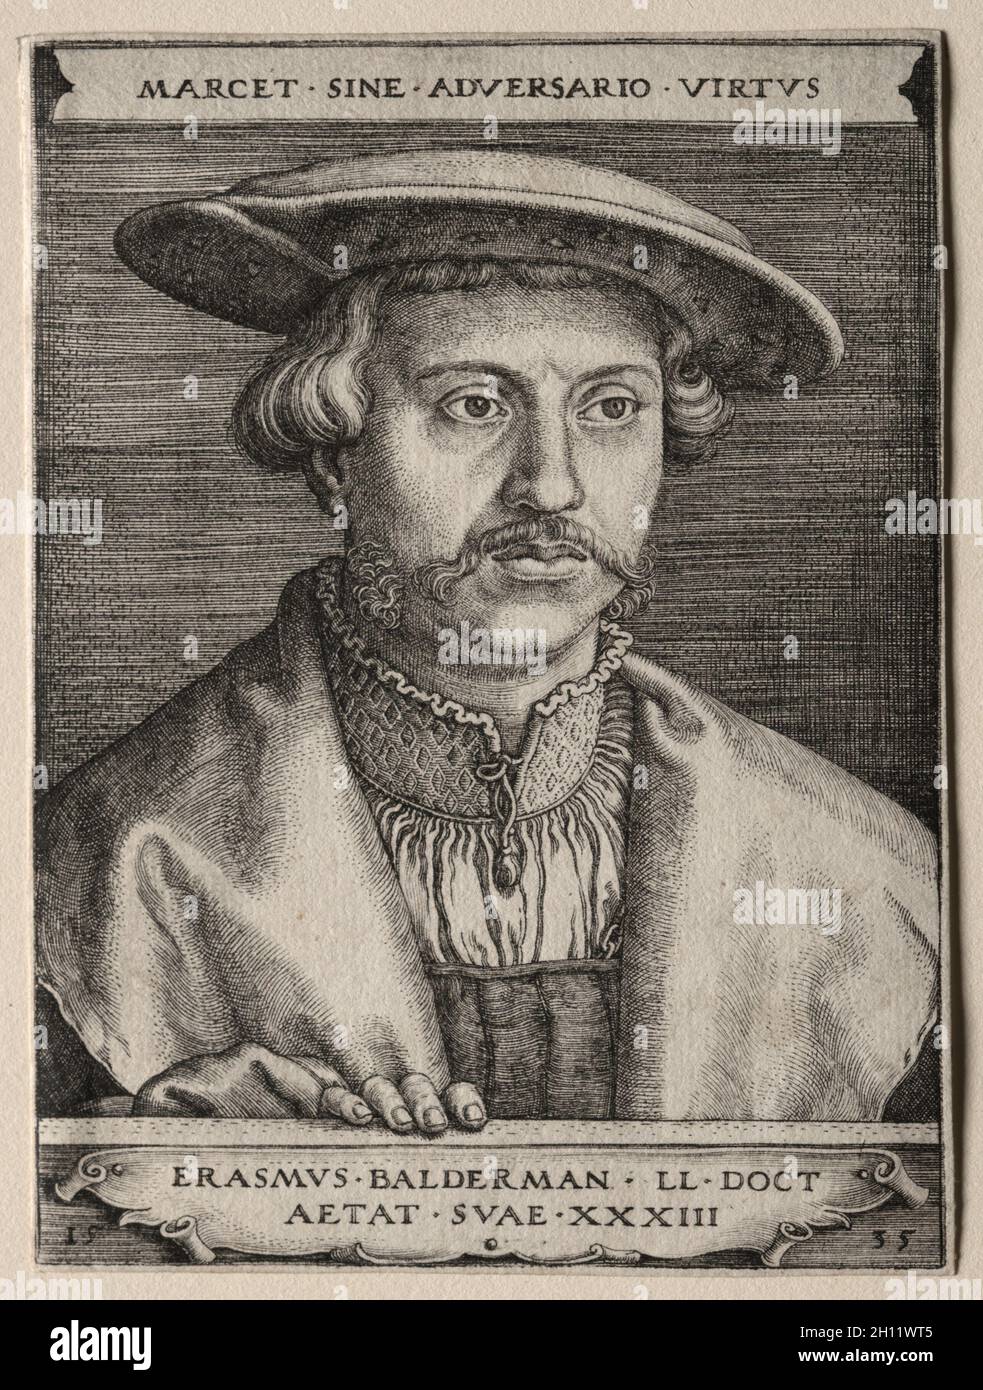 Erasmus Balderman, 1535. Barthel Beham (German, 1502-1540). Engraving; Stock Photo